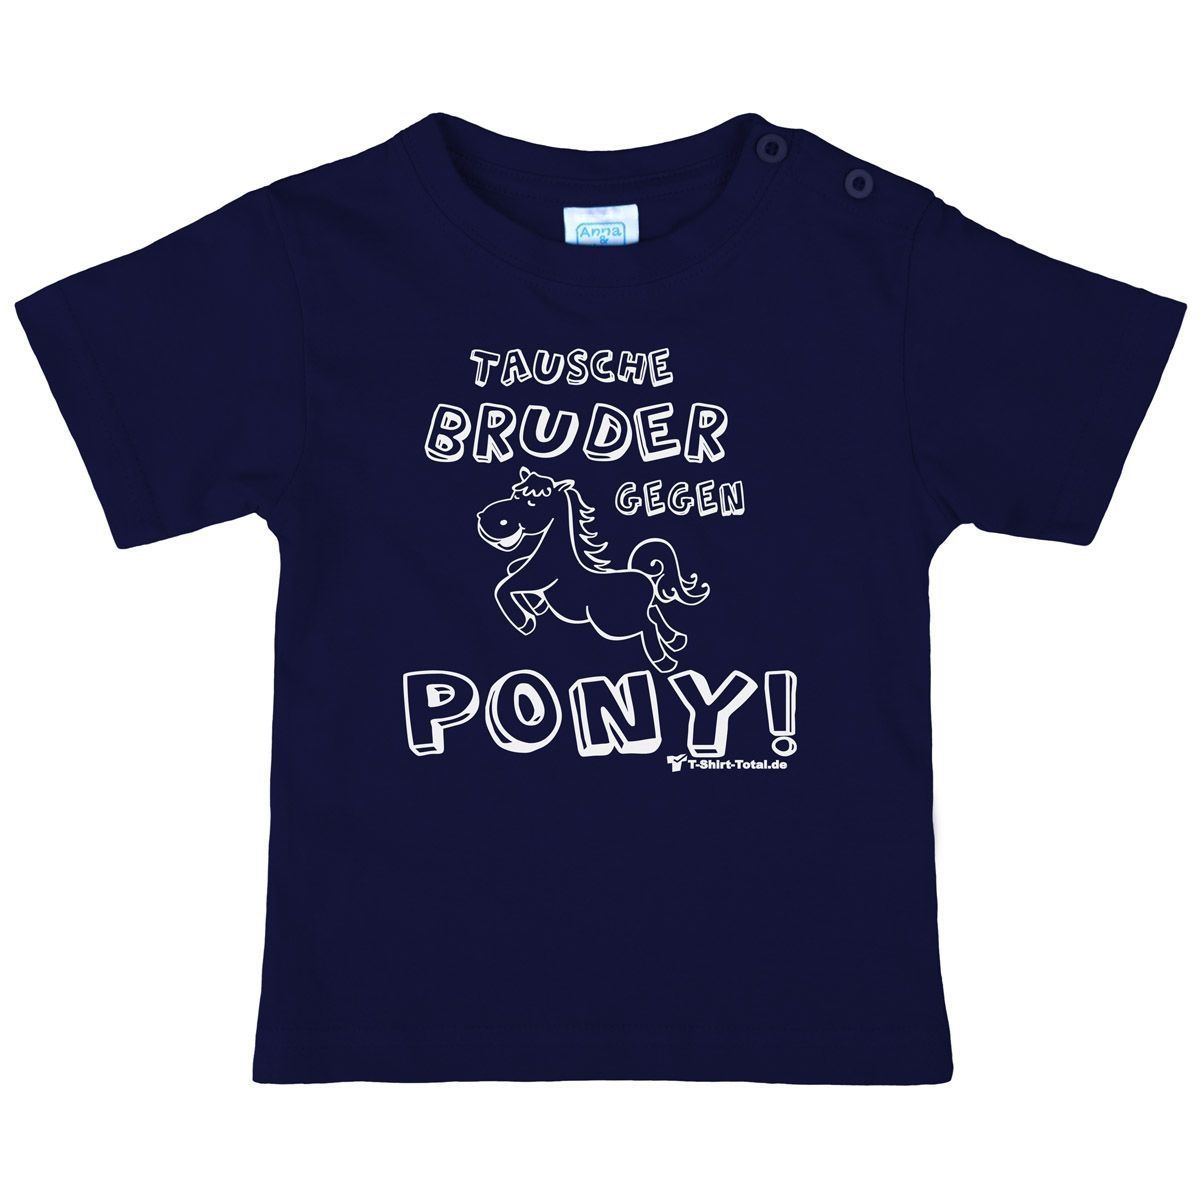 Tausche Bruder gegen Pony Kinder T-Shirt navy 80 / 86